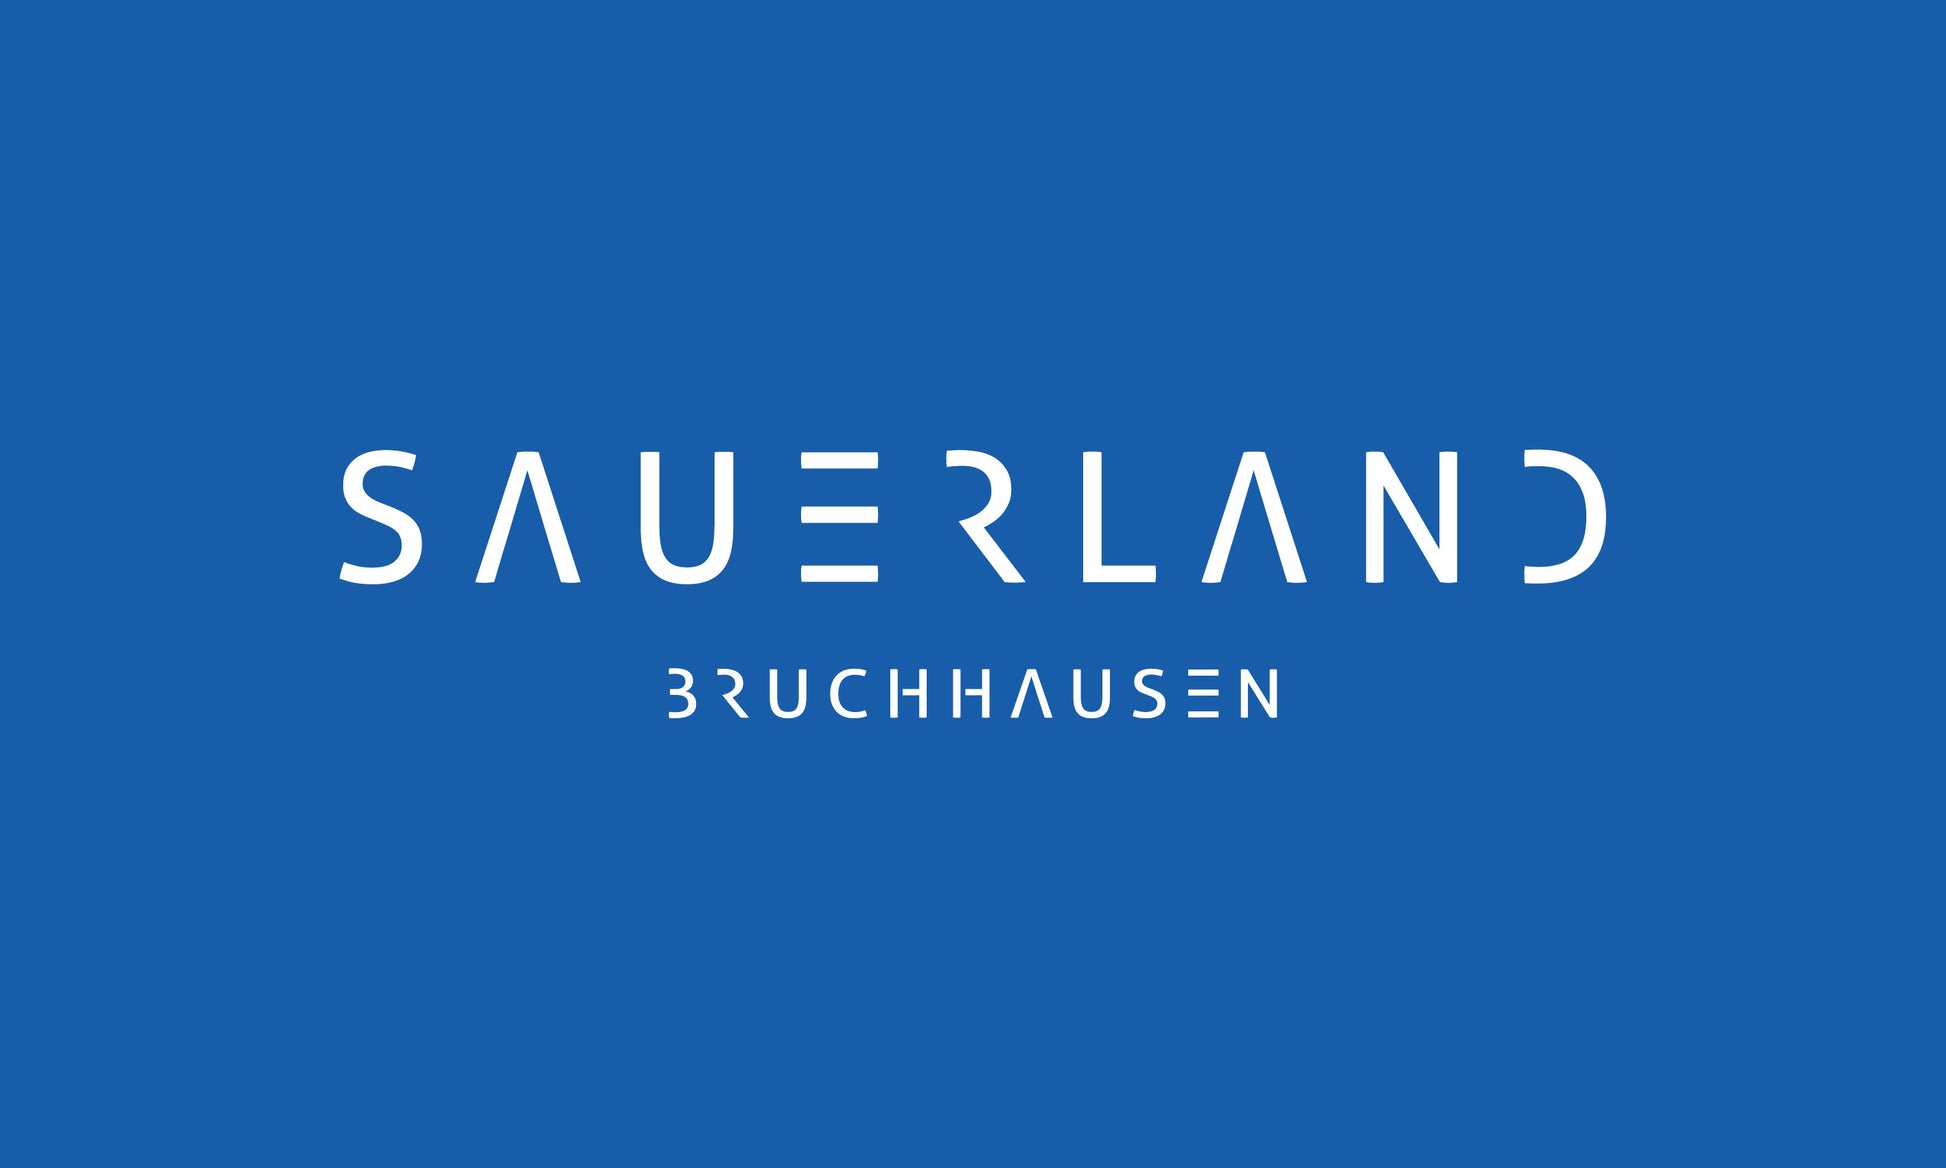 Sauerland Fahne in mittelblau mit weißem Aufdruck Sauerland Bruchhausen